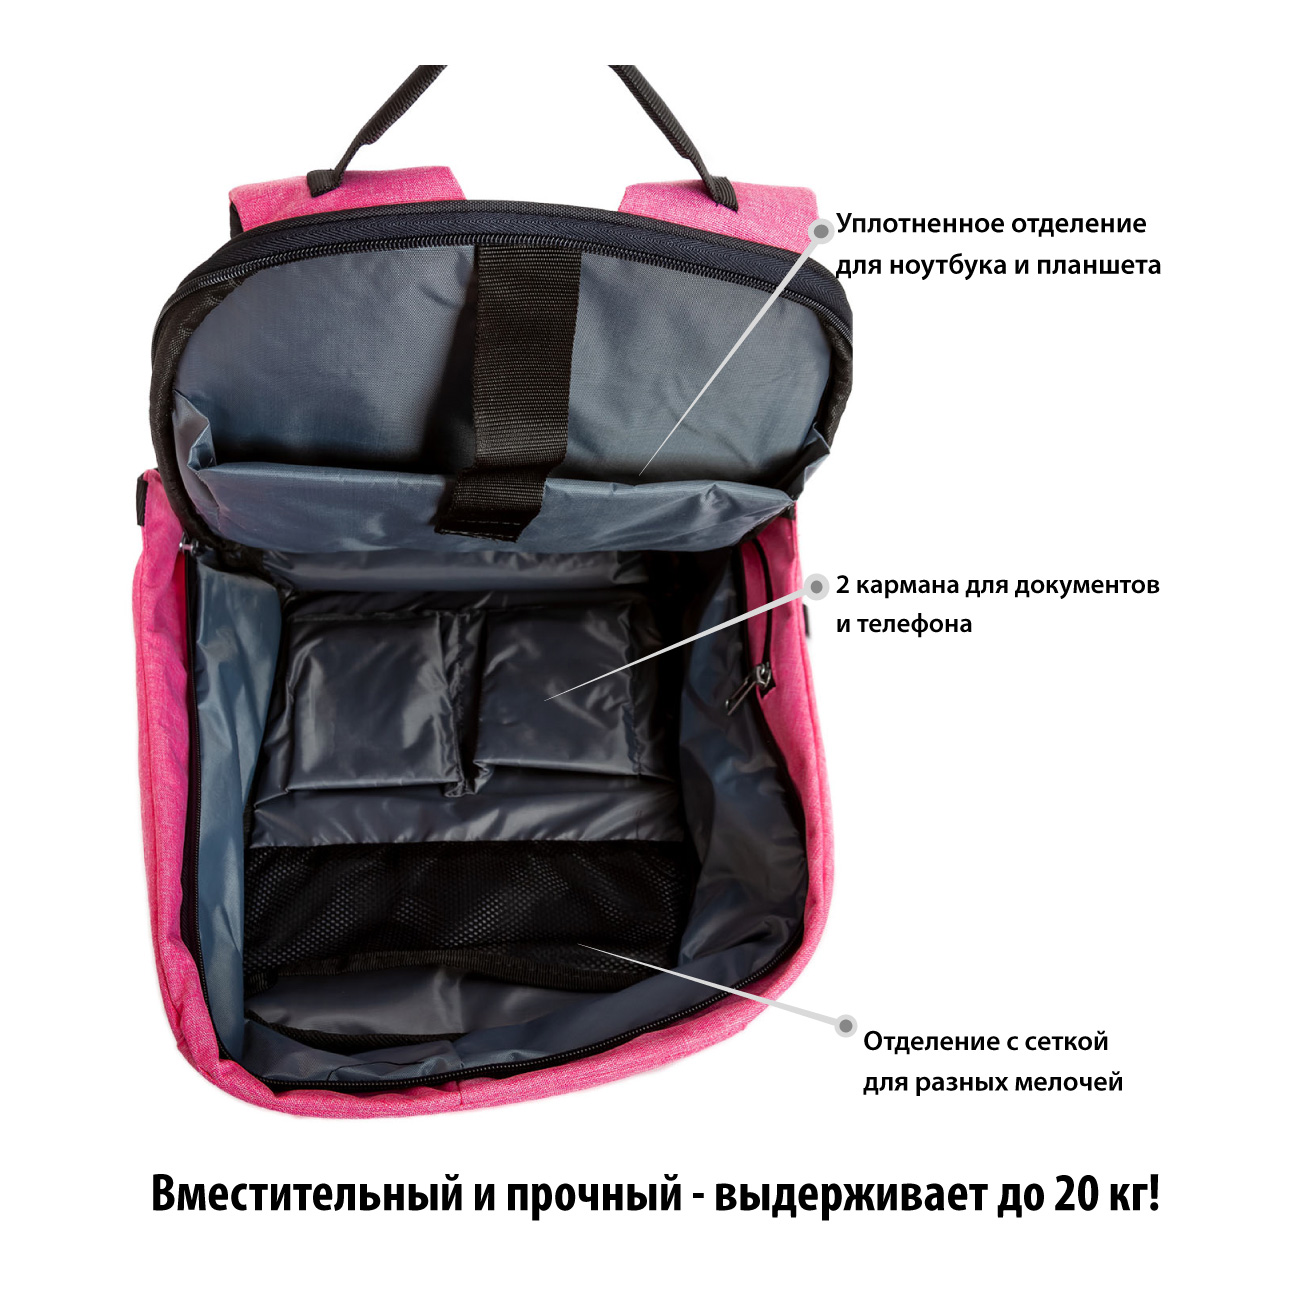 Картинка Рюкзак SUPRA STB-9002, Bluch Pink по разумной цене купить в интернет магазине mall.su